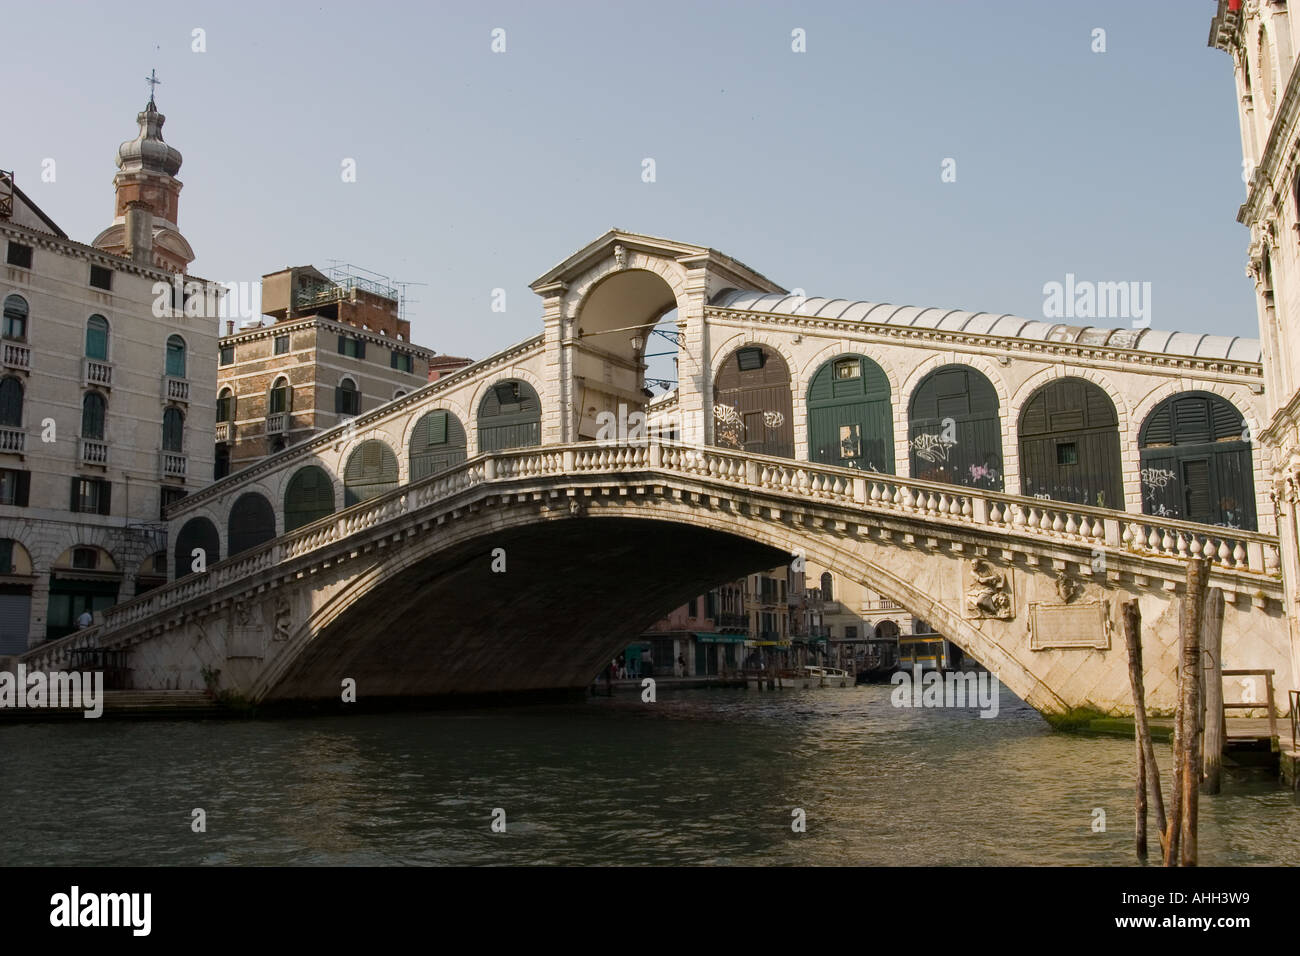 Rialto Bridge, Venice. Stock Photo